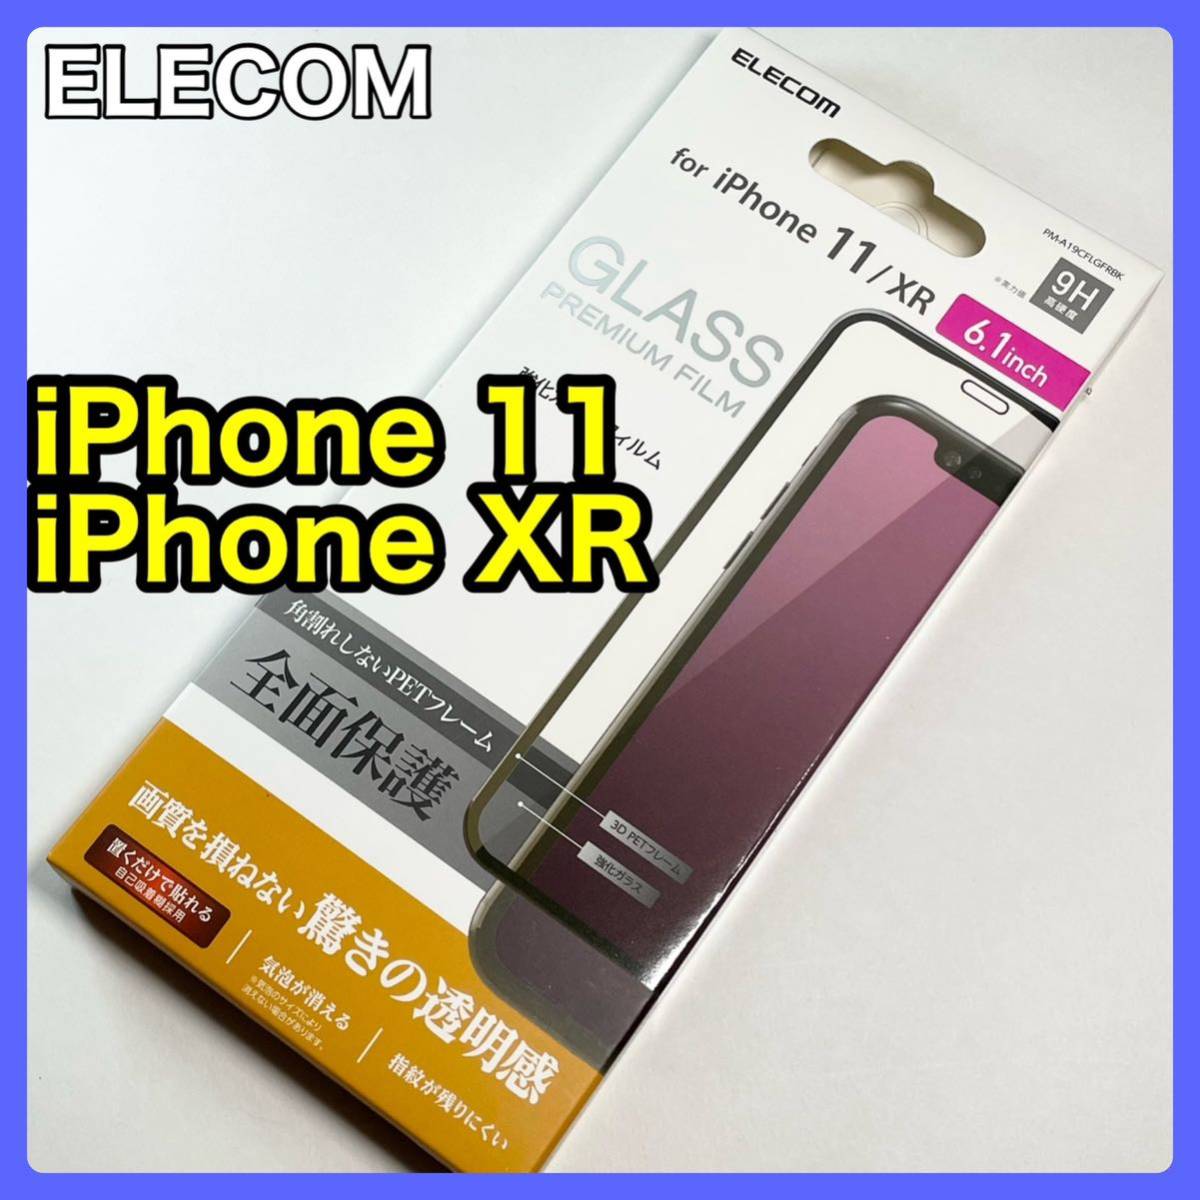 エレコム iPhone 11用フルカバーガラスフィルム/フレーム付の画像1